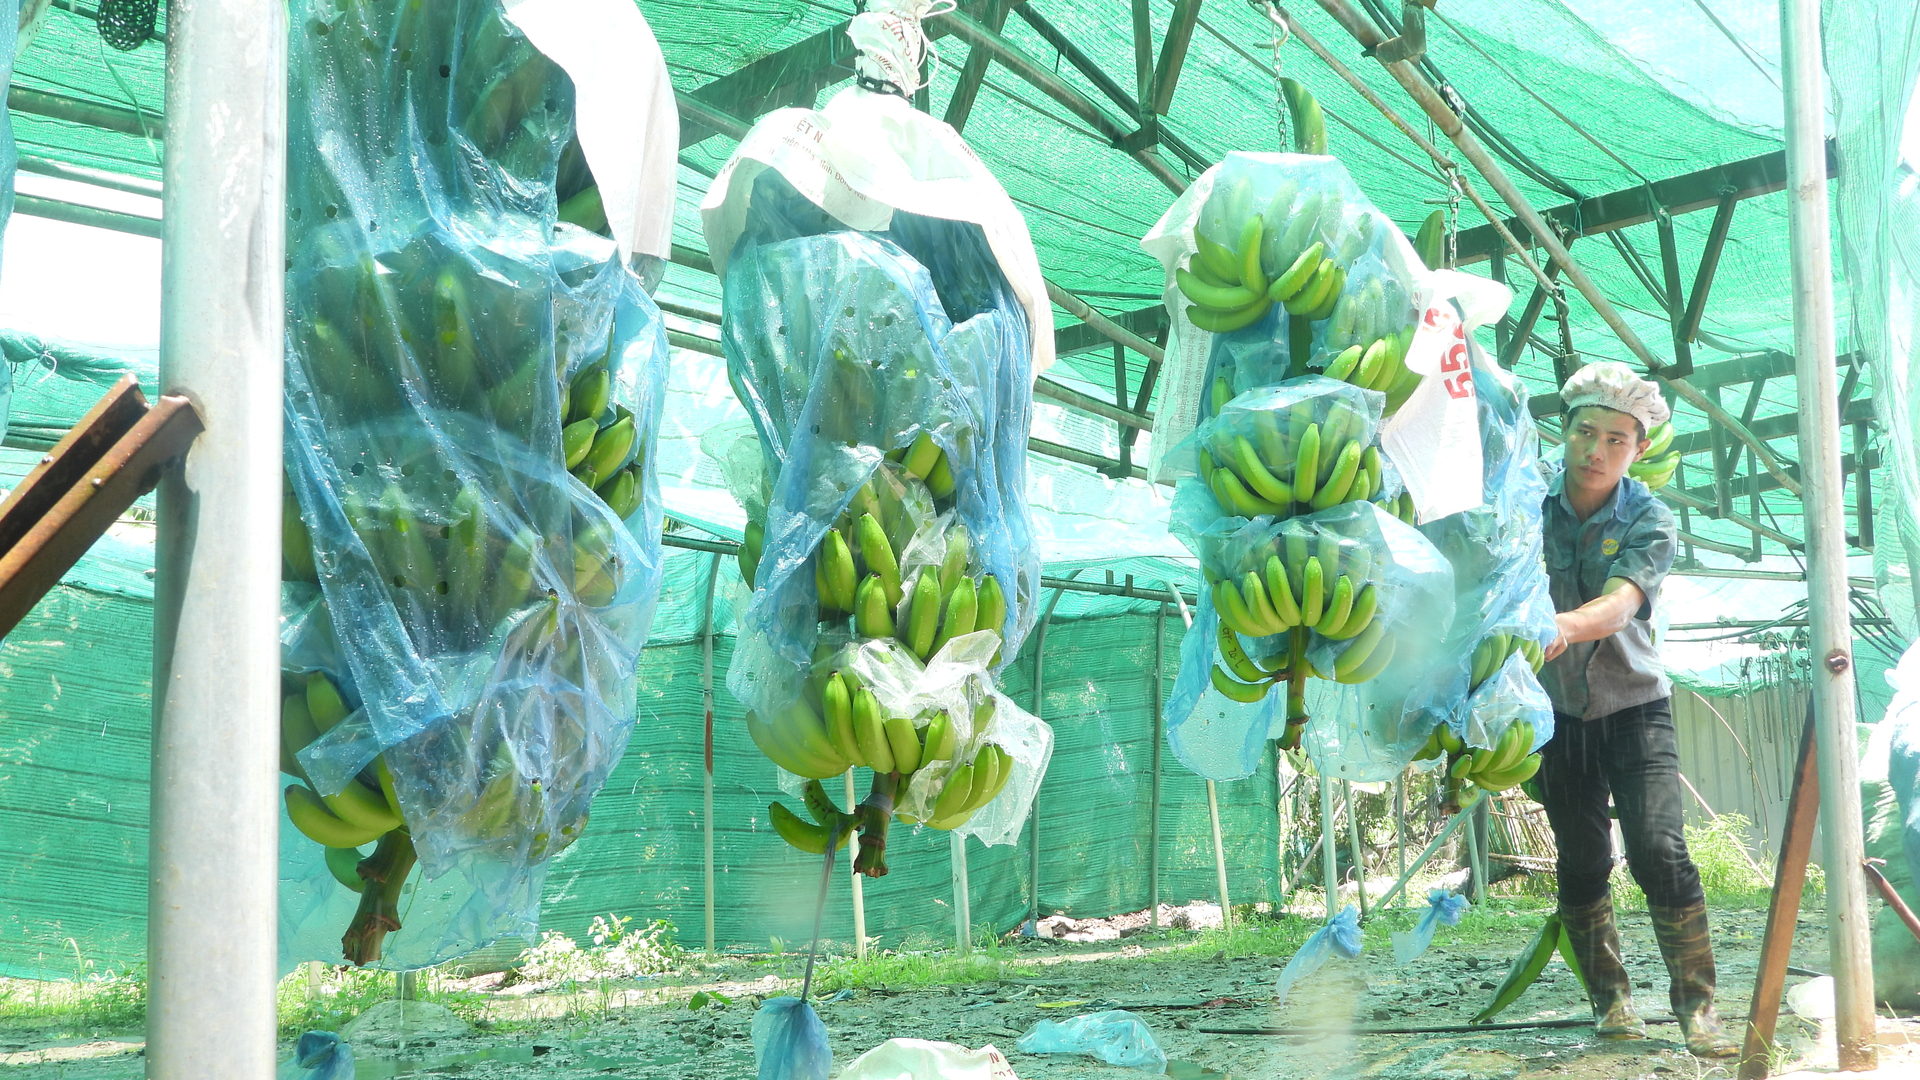 Chuối là một trong những cây trồng chủ lực ứng dụng công nghệ cao vào sản xuất tại huyện Phú Giáo. Ảnh: Trần Trung.